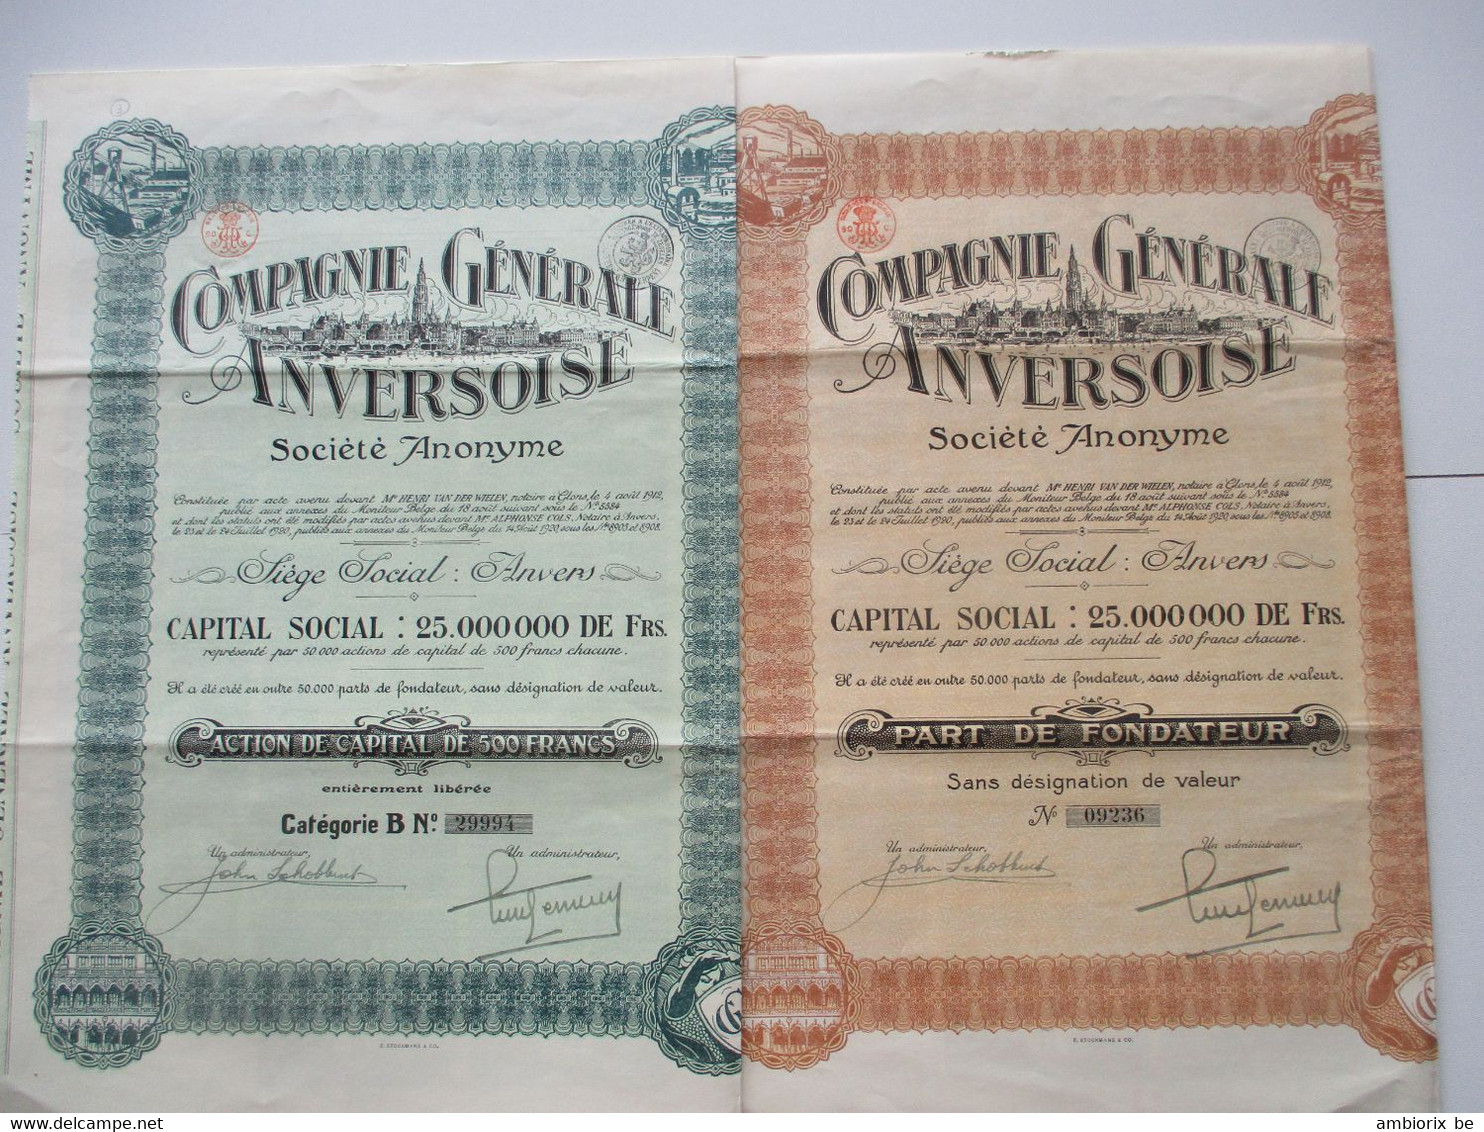 Compagnie Générale Anversoise 1920 - Capital 25 000 000 - Action De Capital De 500 Francs - Part De Fondateur - Navy